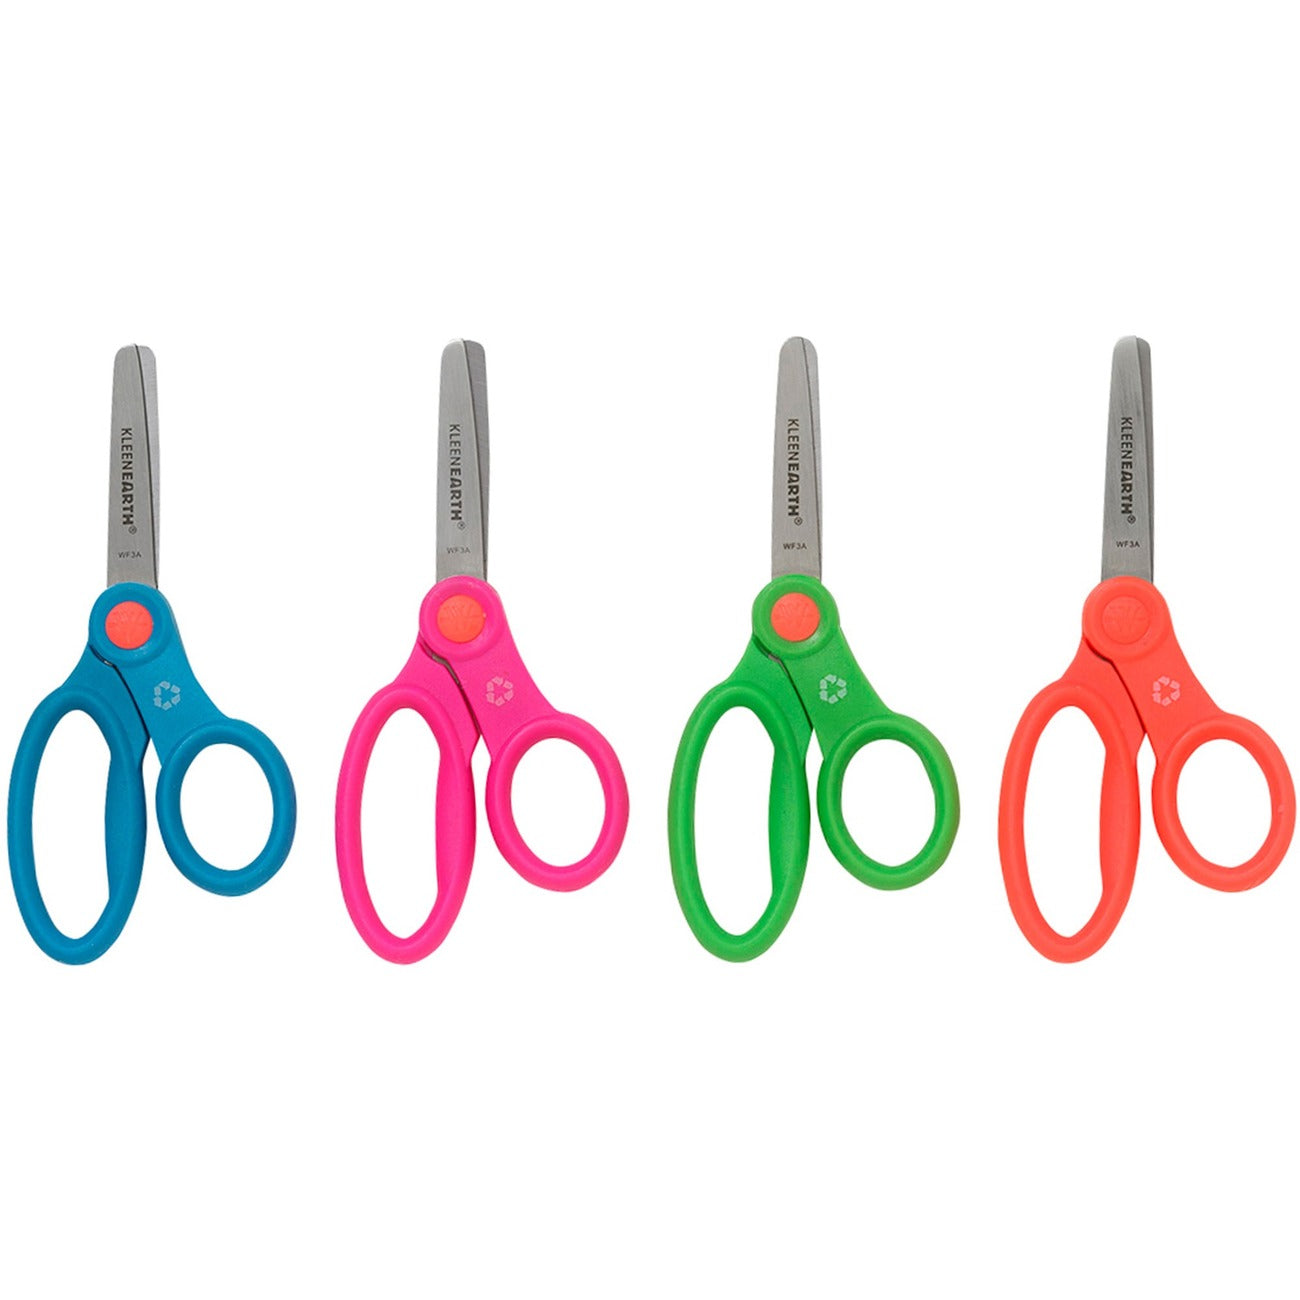 Multipurpose 8" Scissors